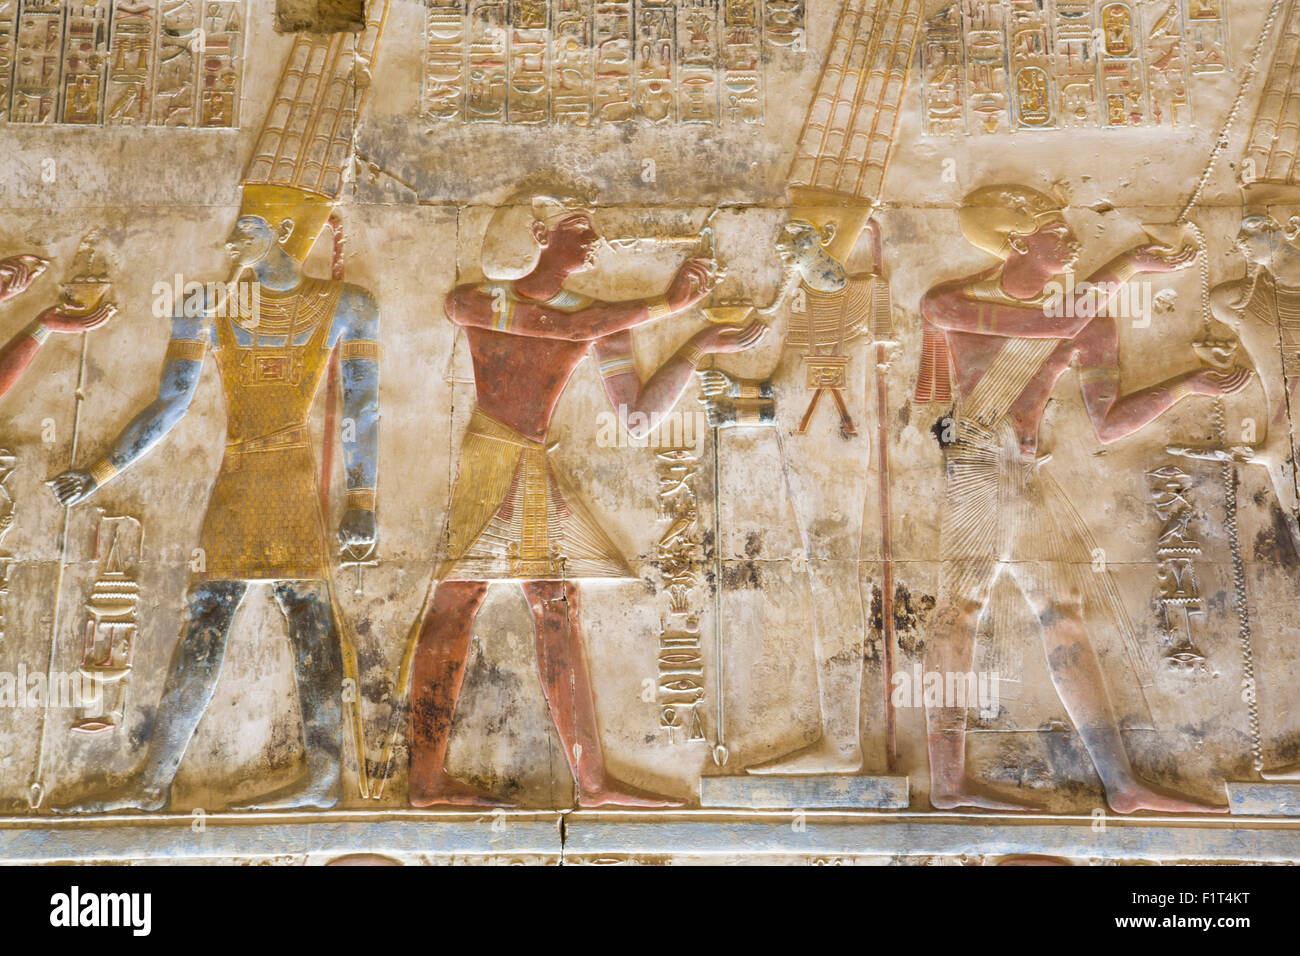 Basrelief, Pharao Seti I zwischen Bilder von Gott Amun-Tempel von Sethos i., Abydos, Ägypten, Nordafrika, Afrika Stockfoto